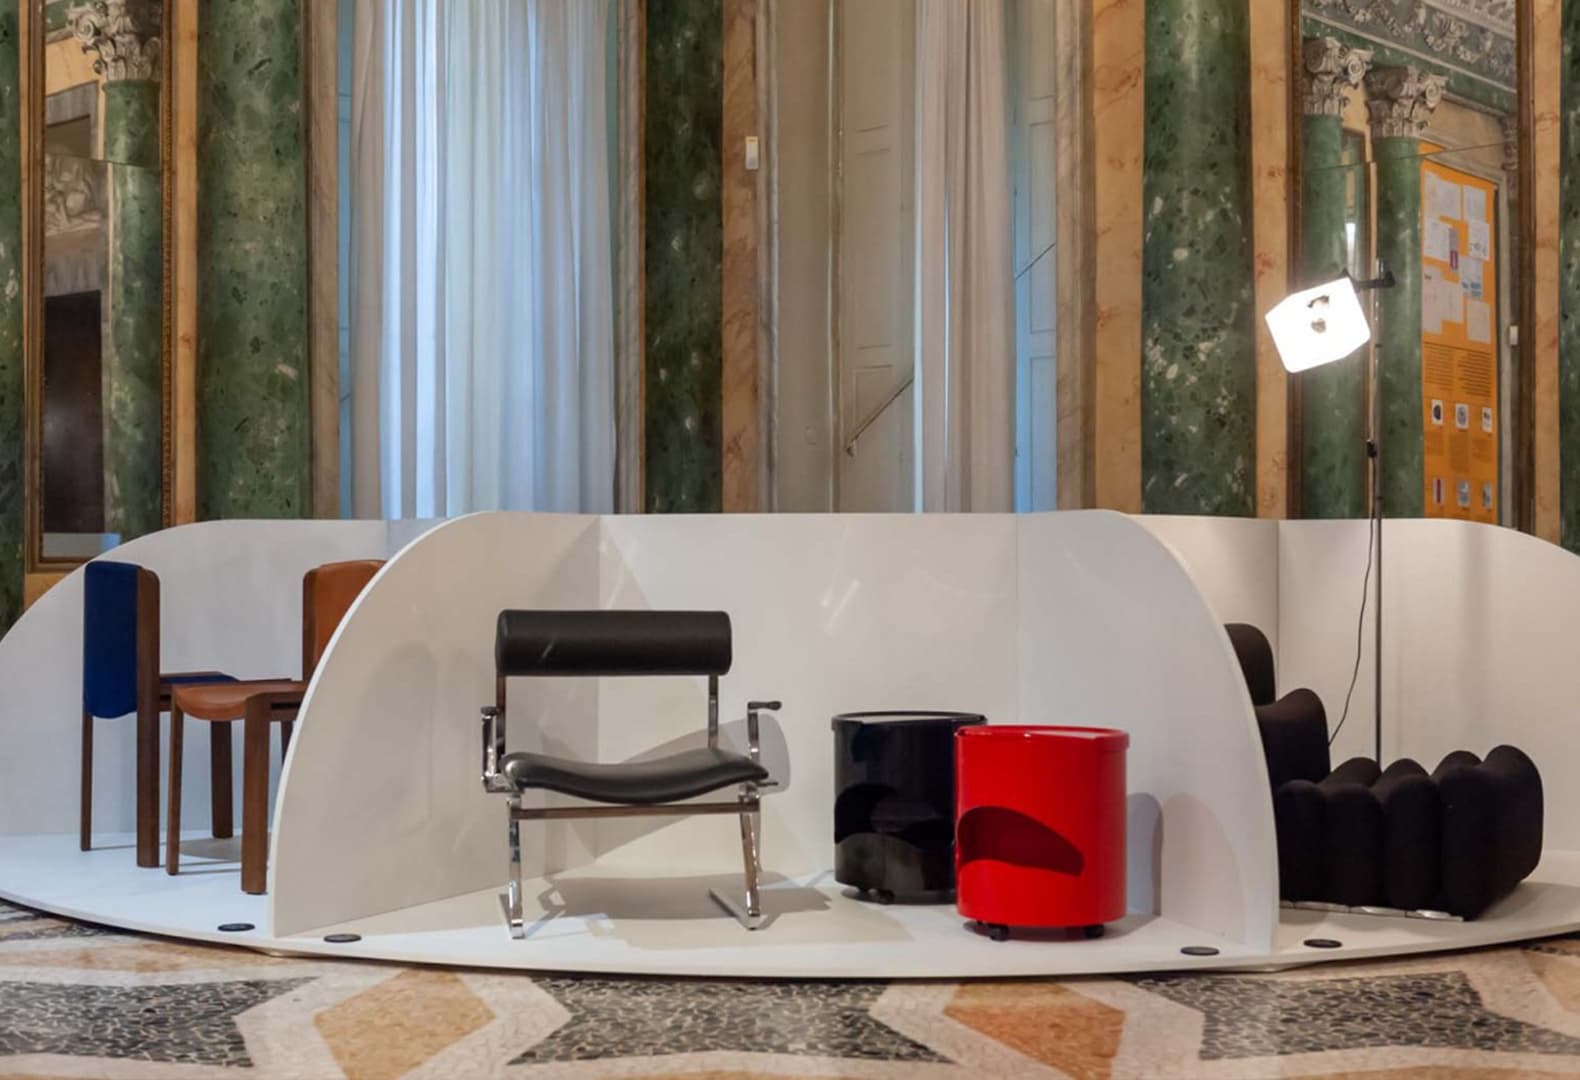 Мебель Джо Коломбо на выставке в Галерее современного искусства в Милане. Фото: Teo Finazzi